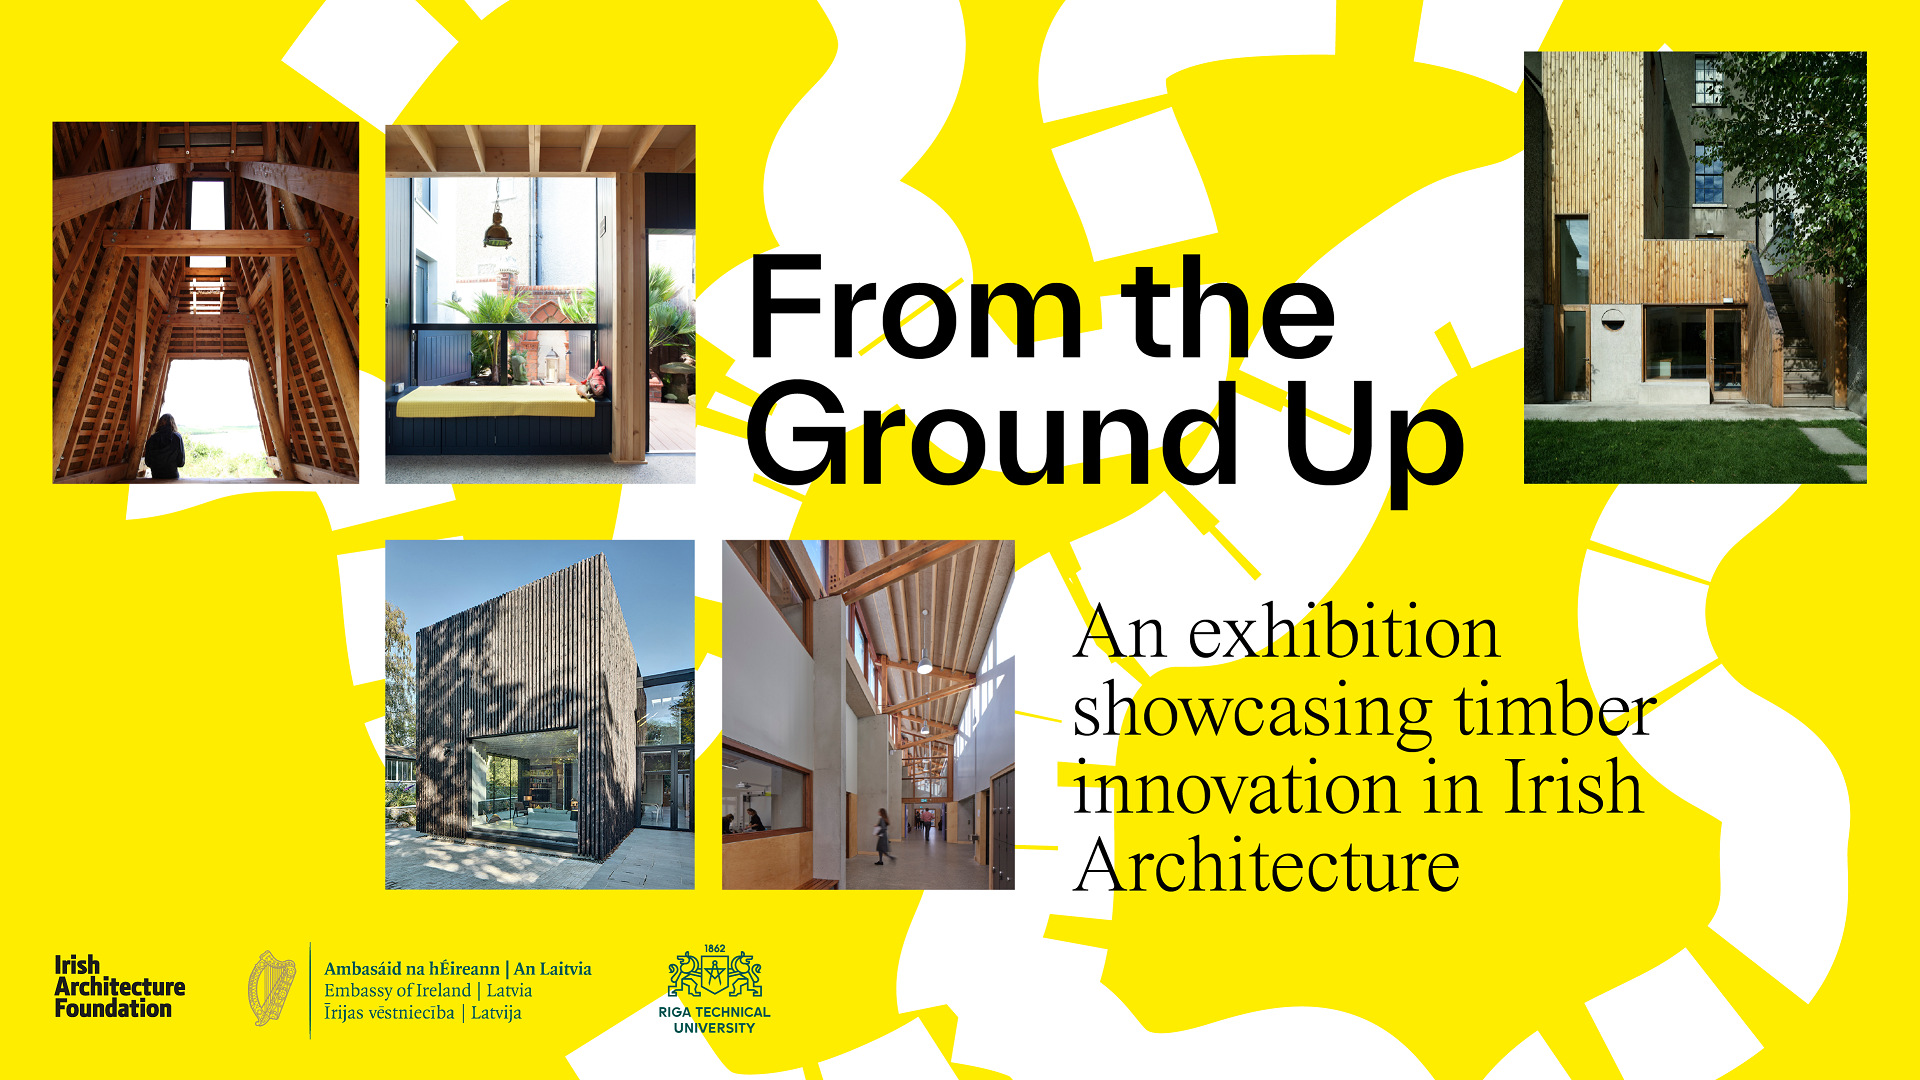 RTU Arhitektūras fakultātē skatāma izstāde par koka inovācijām Īrijas arhitektūrā